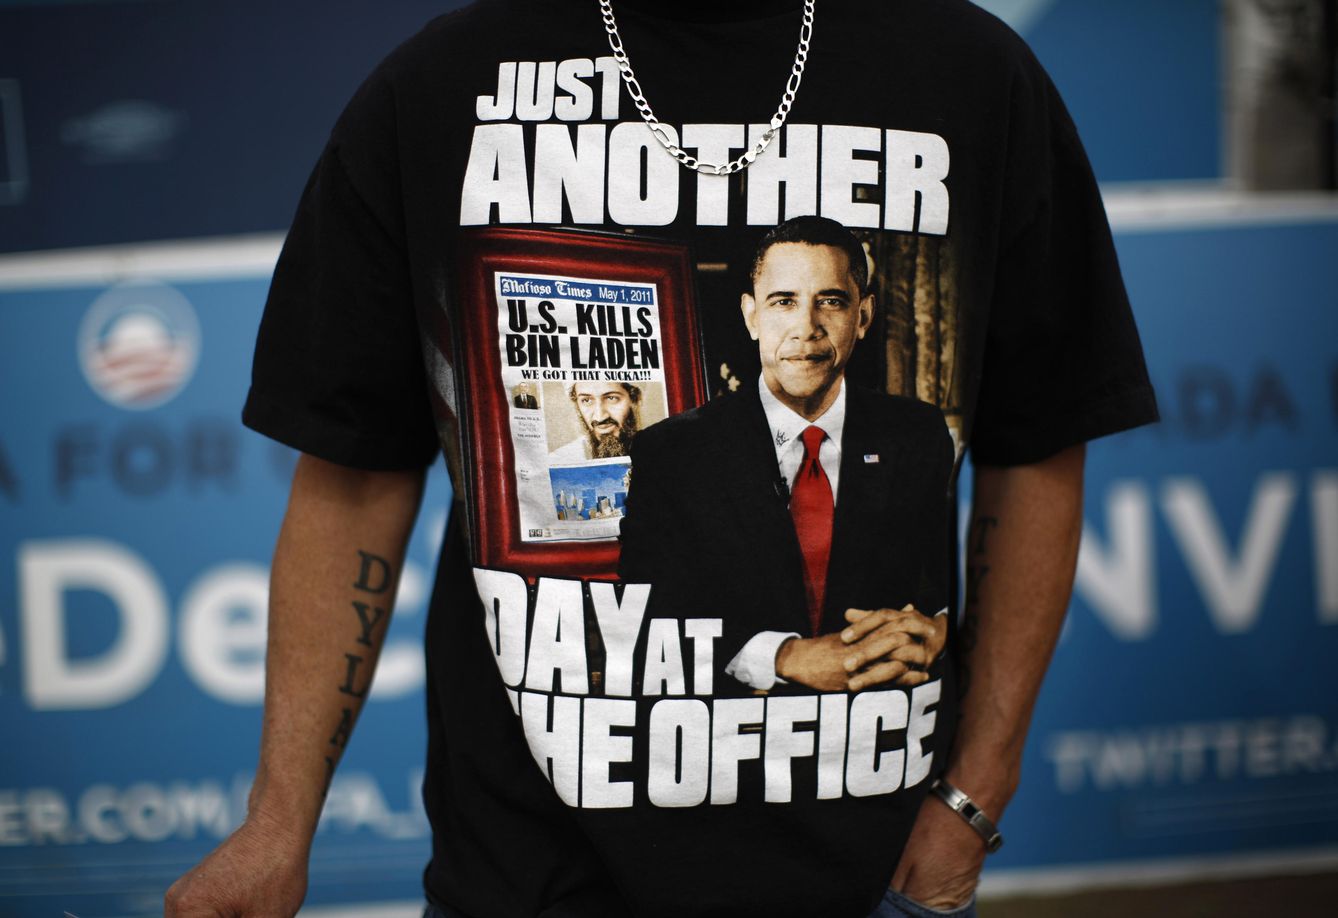 Un votante de Barack Obama con una camiseta sobre la muerte de Bin Laden, en Las Vegas, Nevada (Reuters).